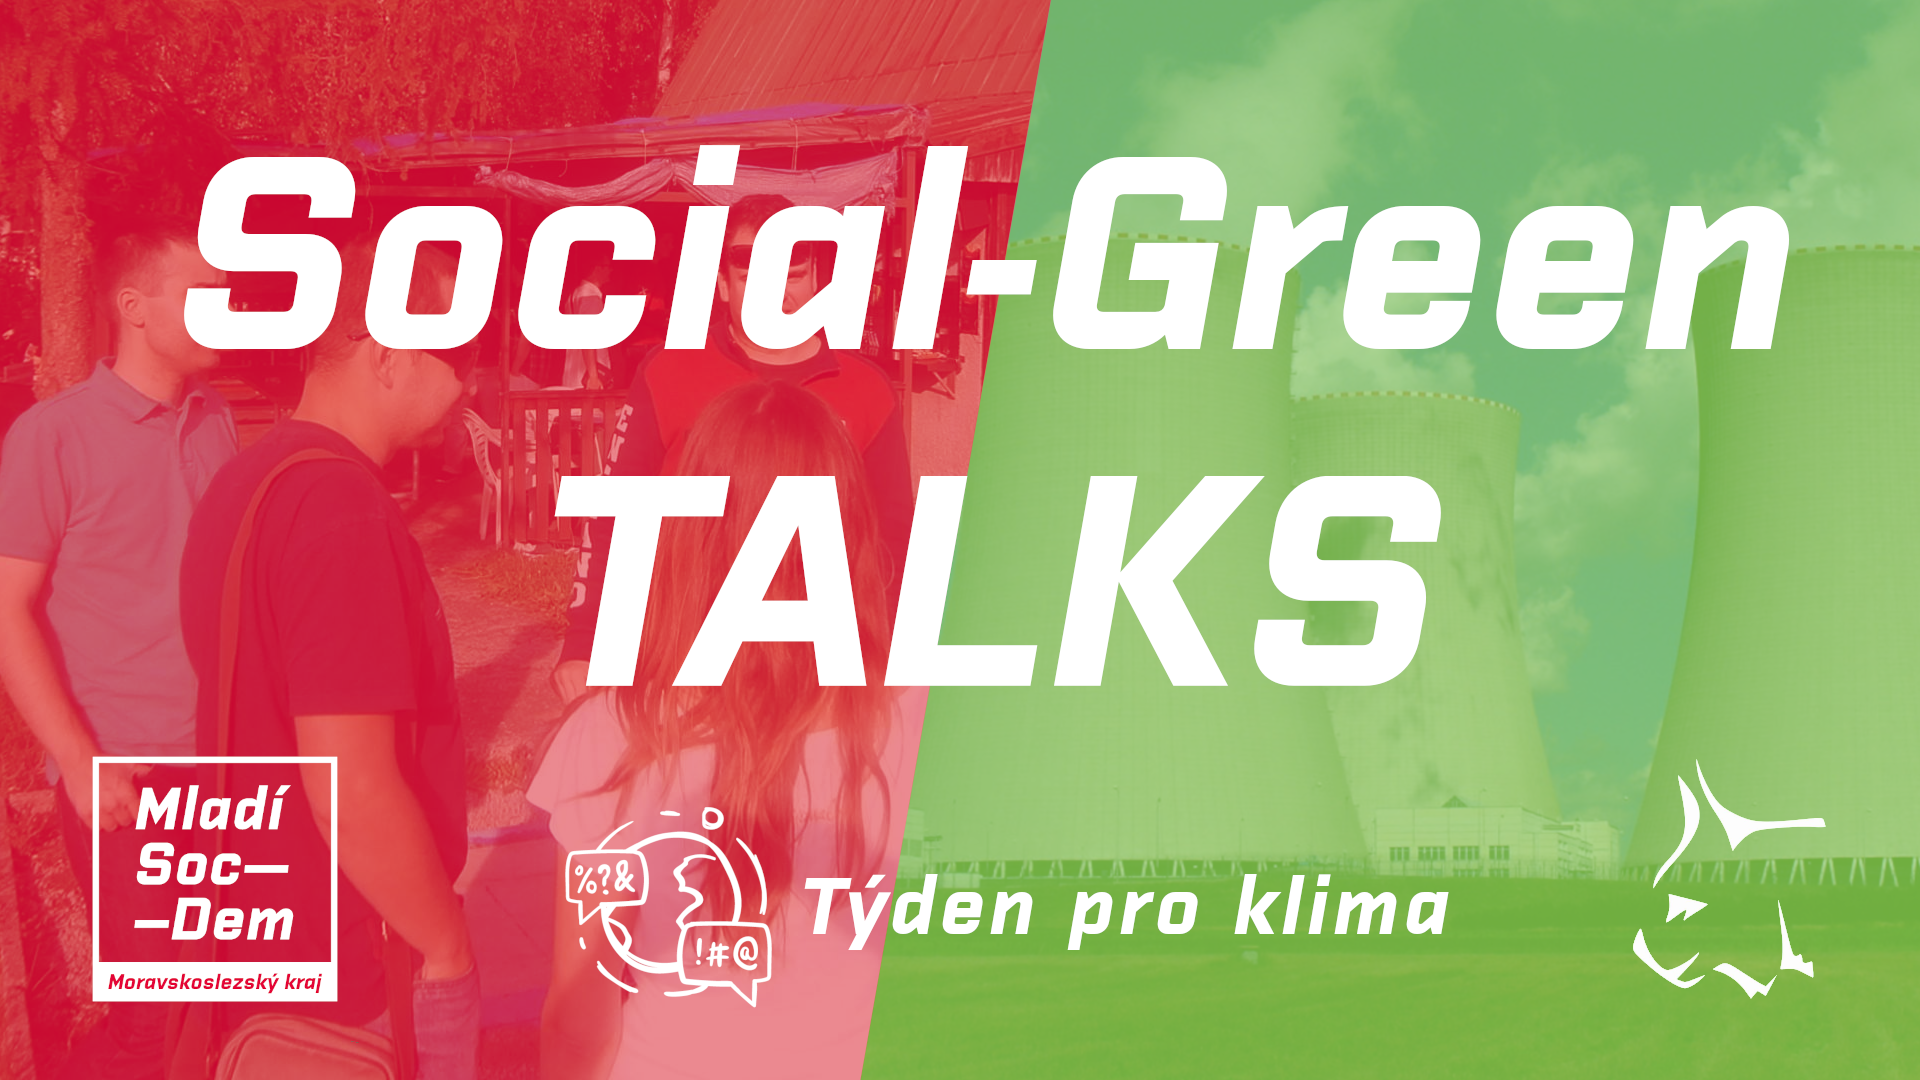 Social-Green TALKS #2